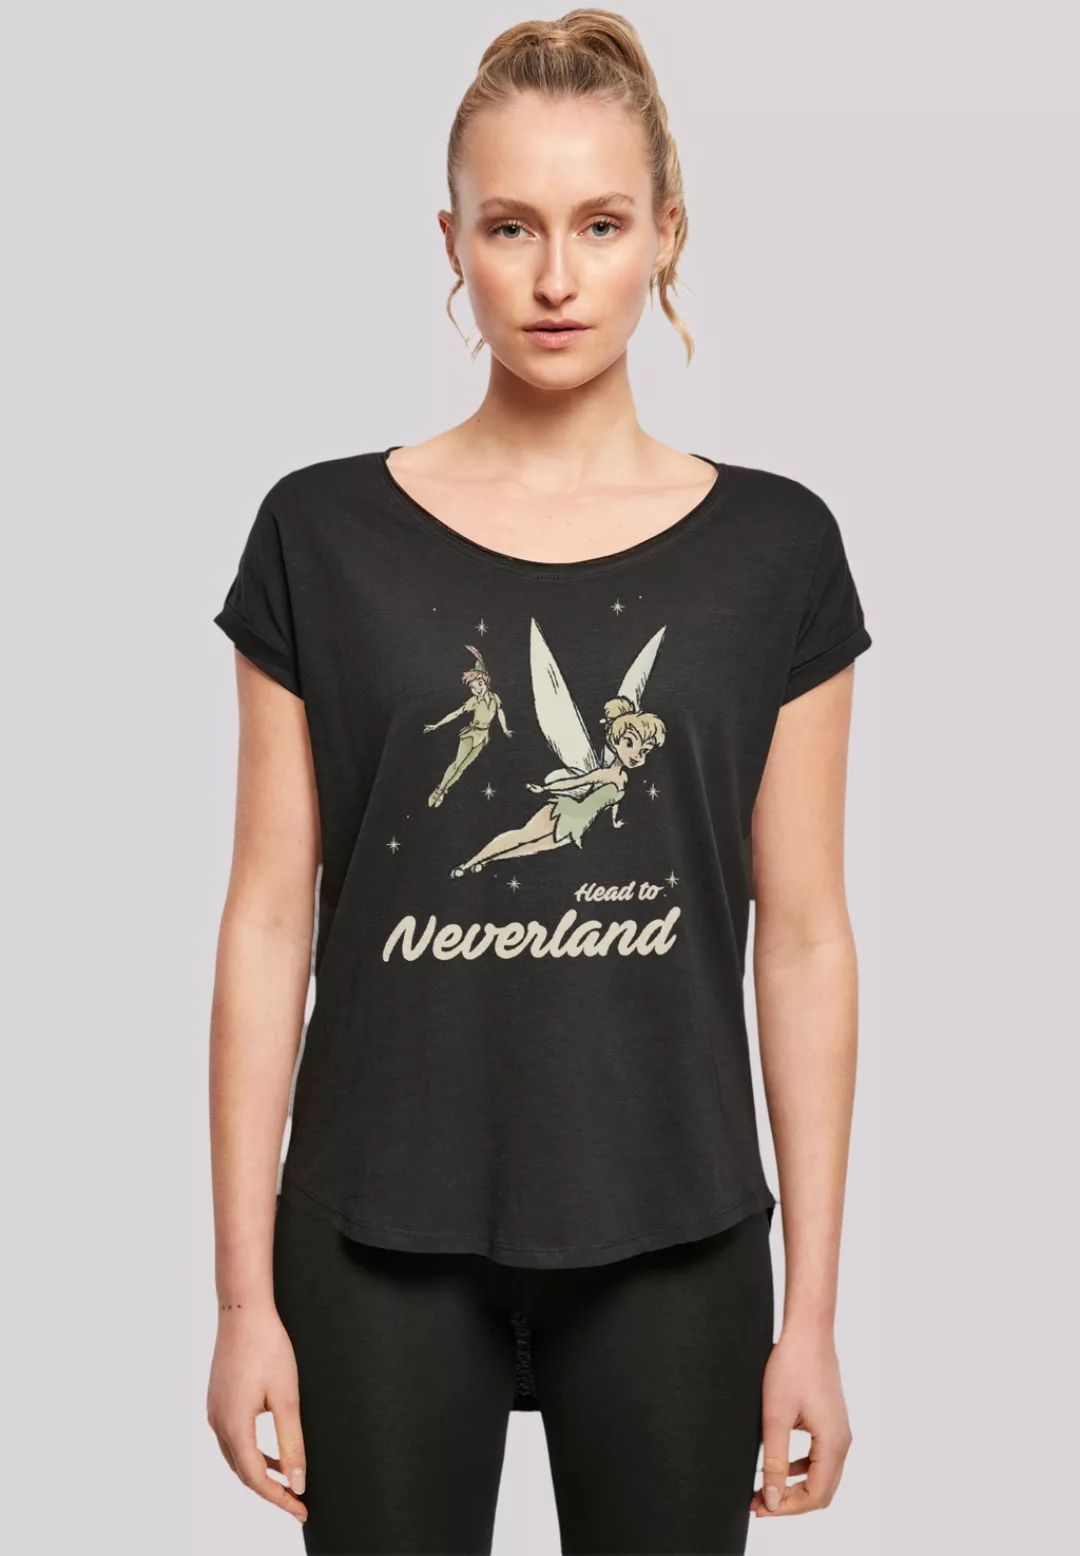 F4NT4STIC T-Shirt "Disney Peter Pan Head To Neverland", Premium Qualität günstig online kaufen